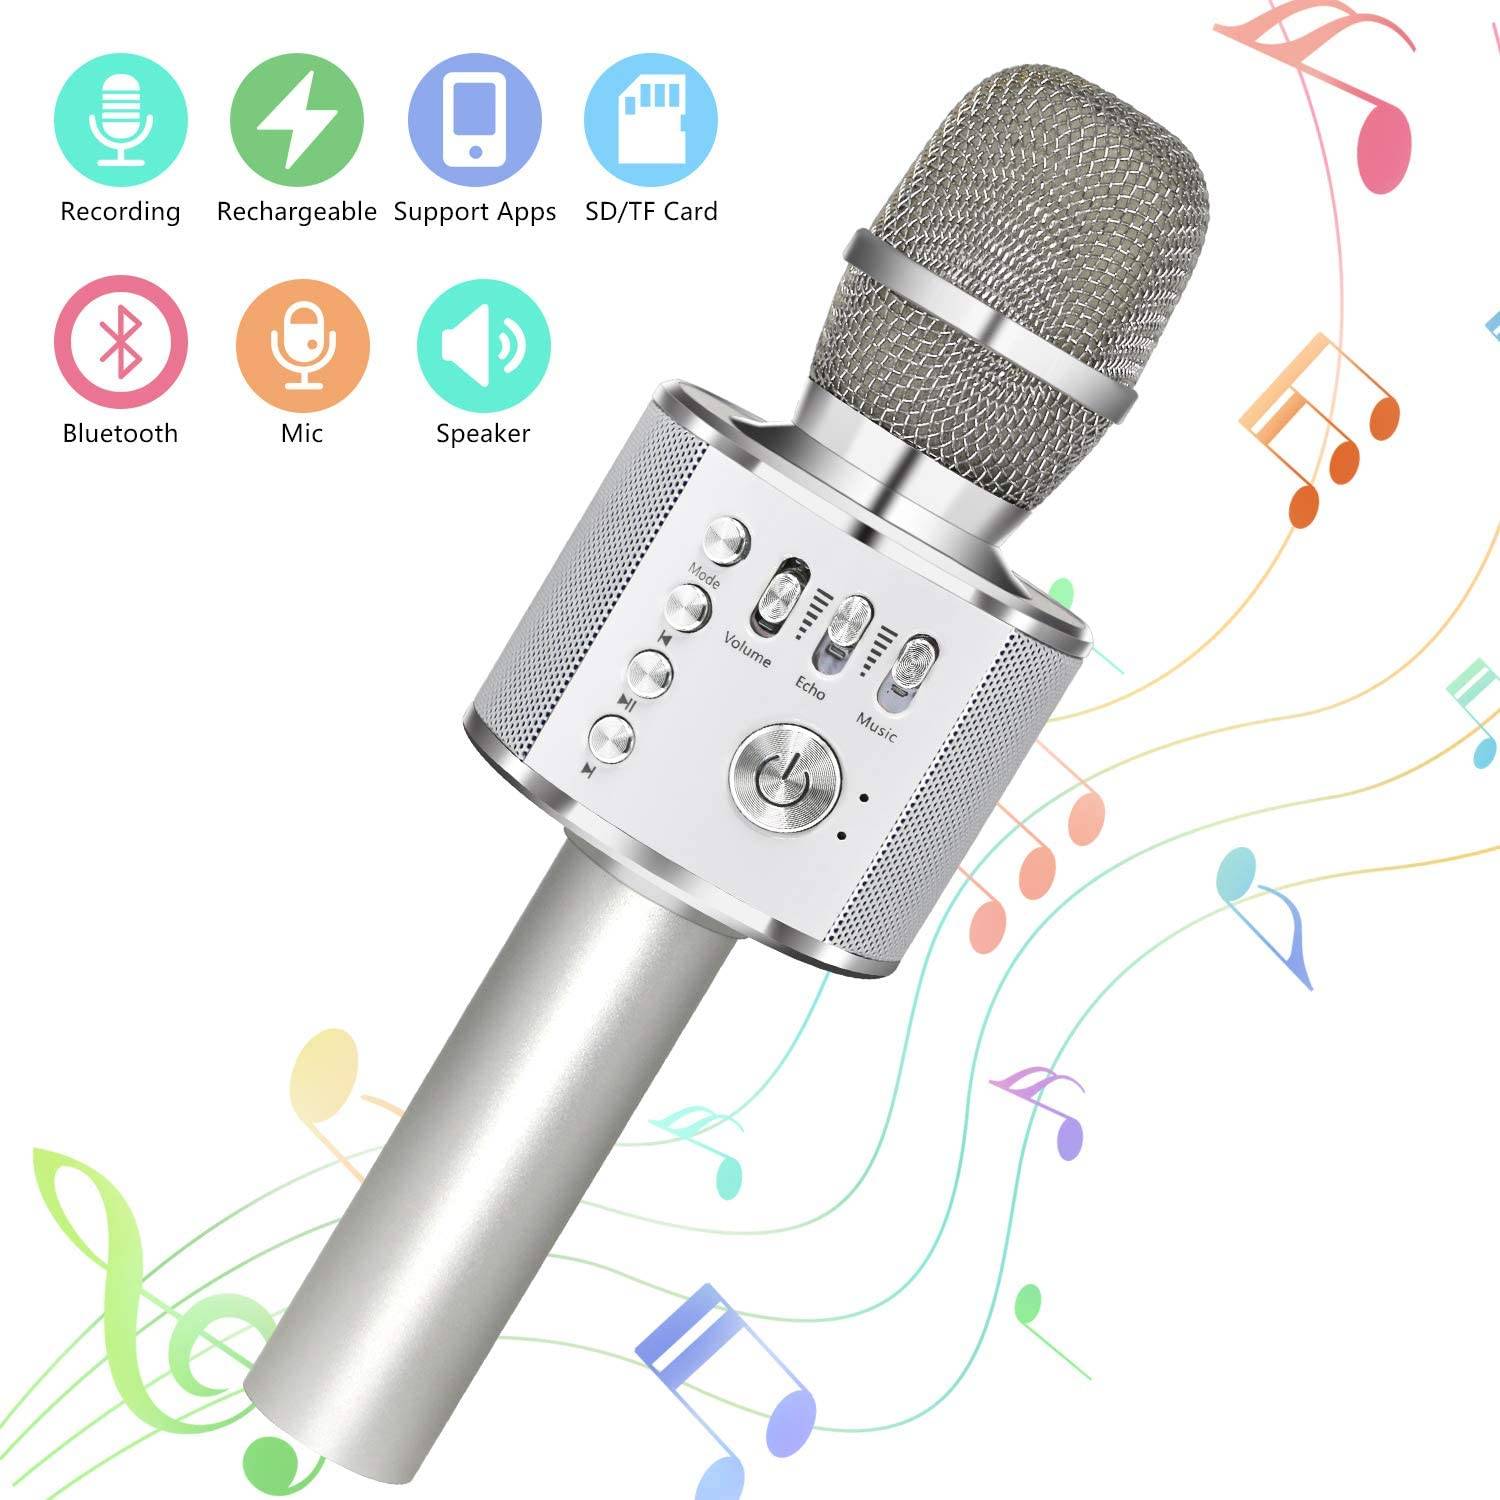 Устройство микрофона: характеристики, виды и типы микрофонов???? устройство вывода и принцип работы микрофона - faq от earphones-review????